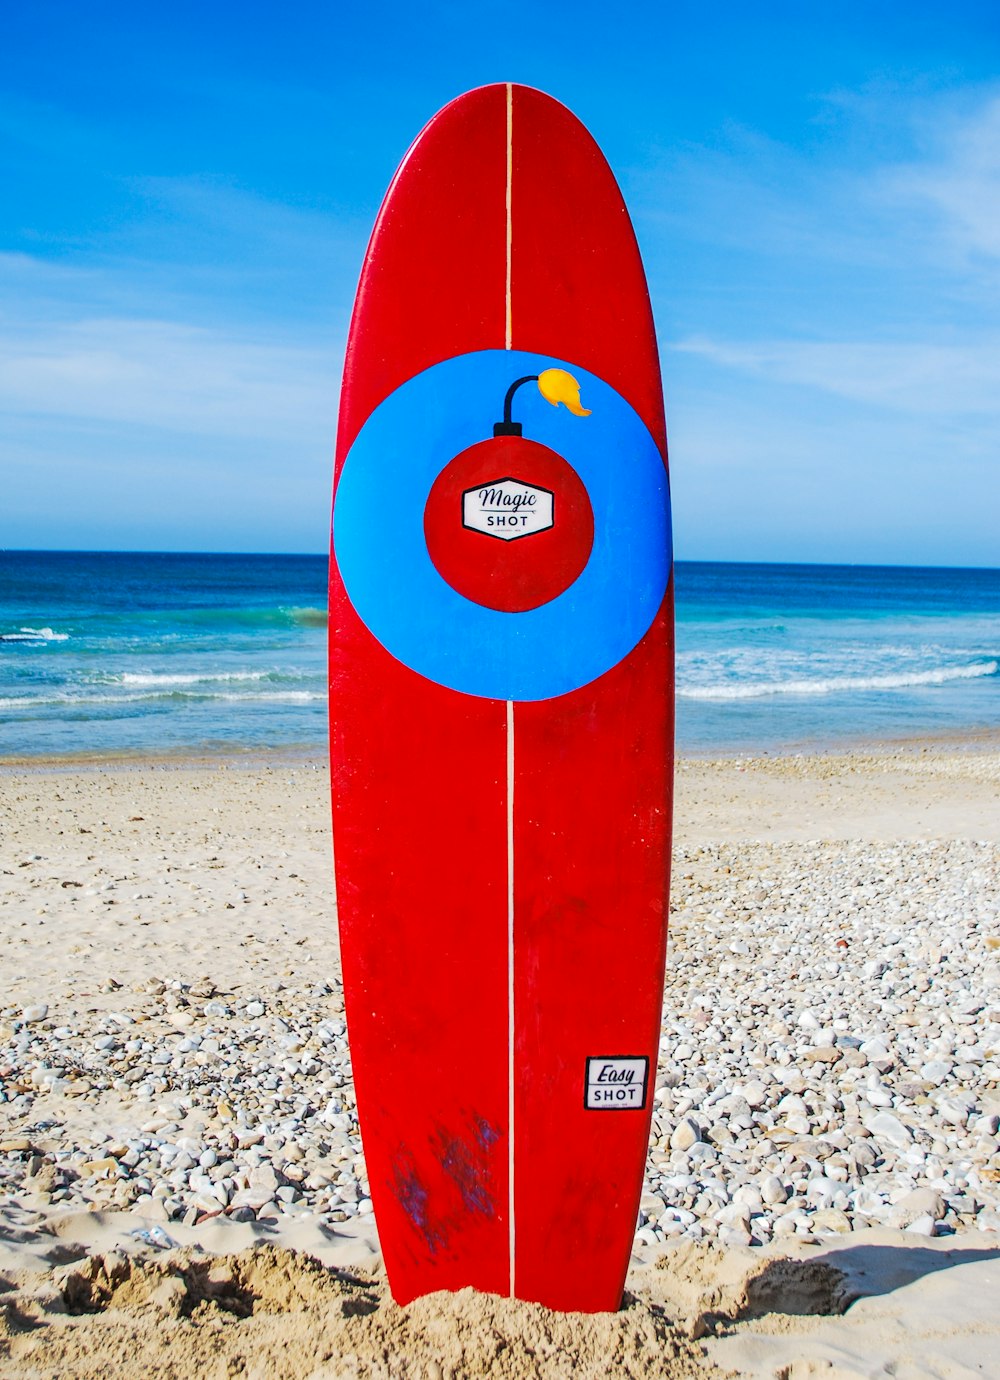 tavola da surf rossa sulla riva della spiaggia durante il giorno